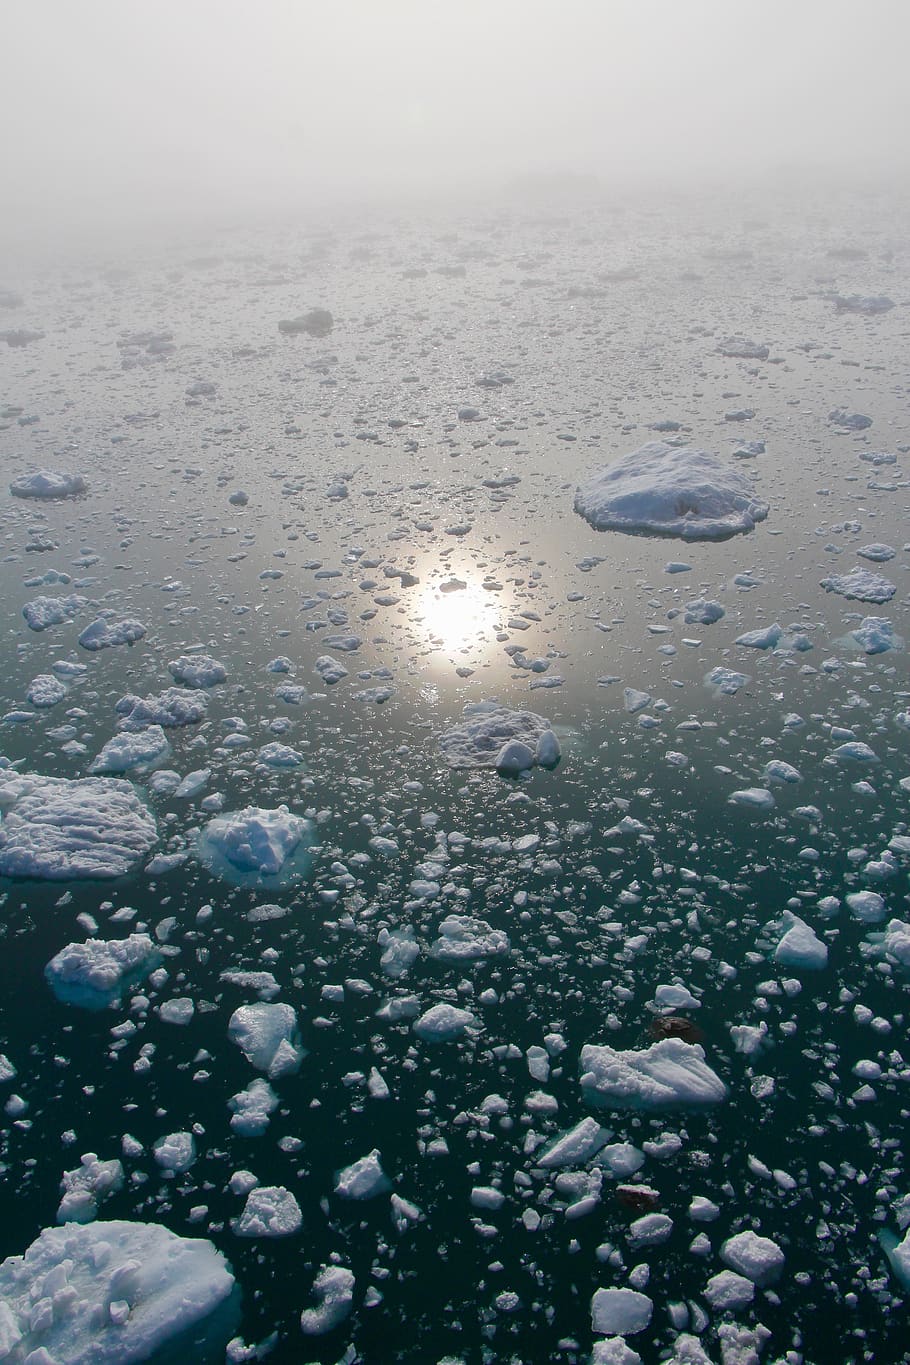 ártico, círculo polar ártico, groenlandia, ilulissat, iceberg, flujo de hielo, fiordo de hielo, reflexión, mar ártico, crucero